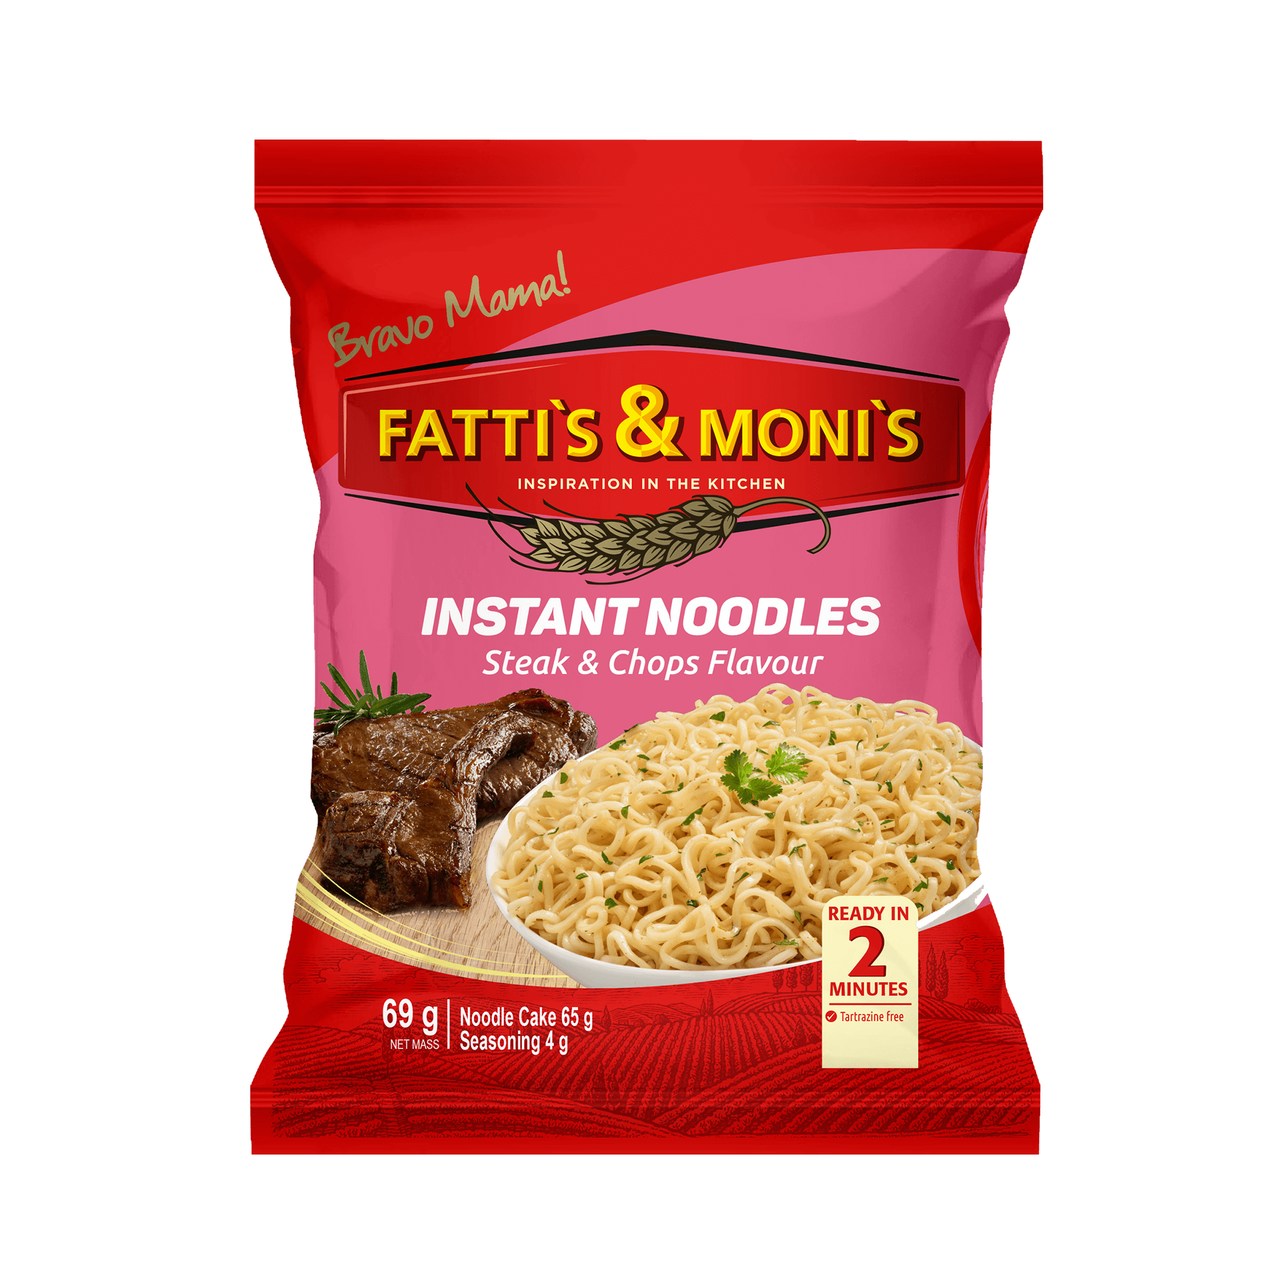 Fattis and Monis Instant Noodles Steak Chops